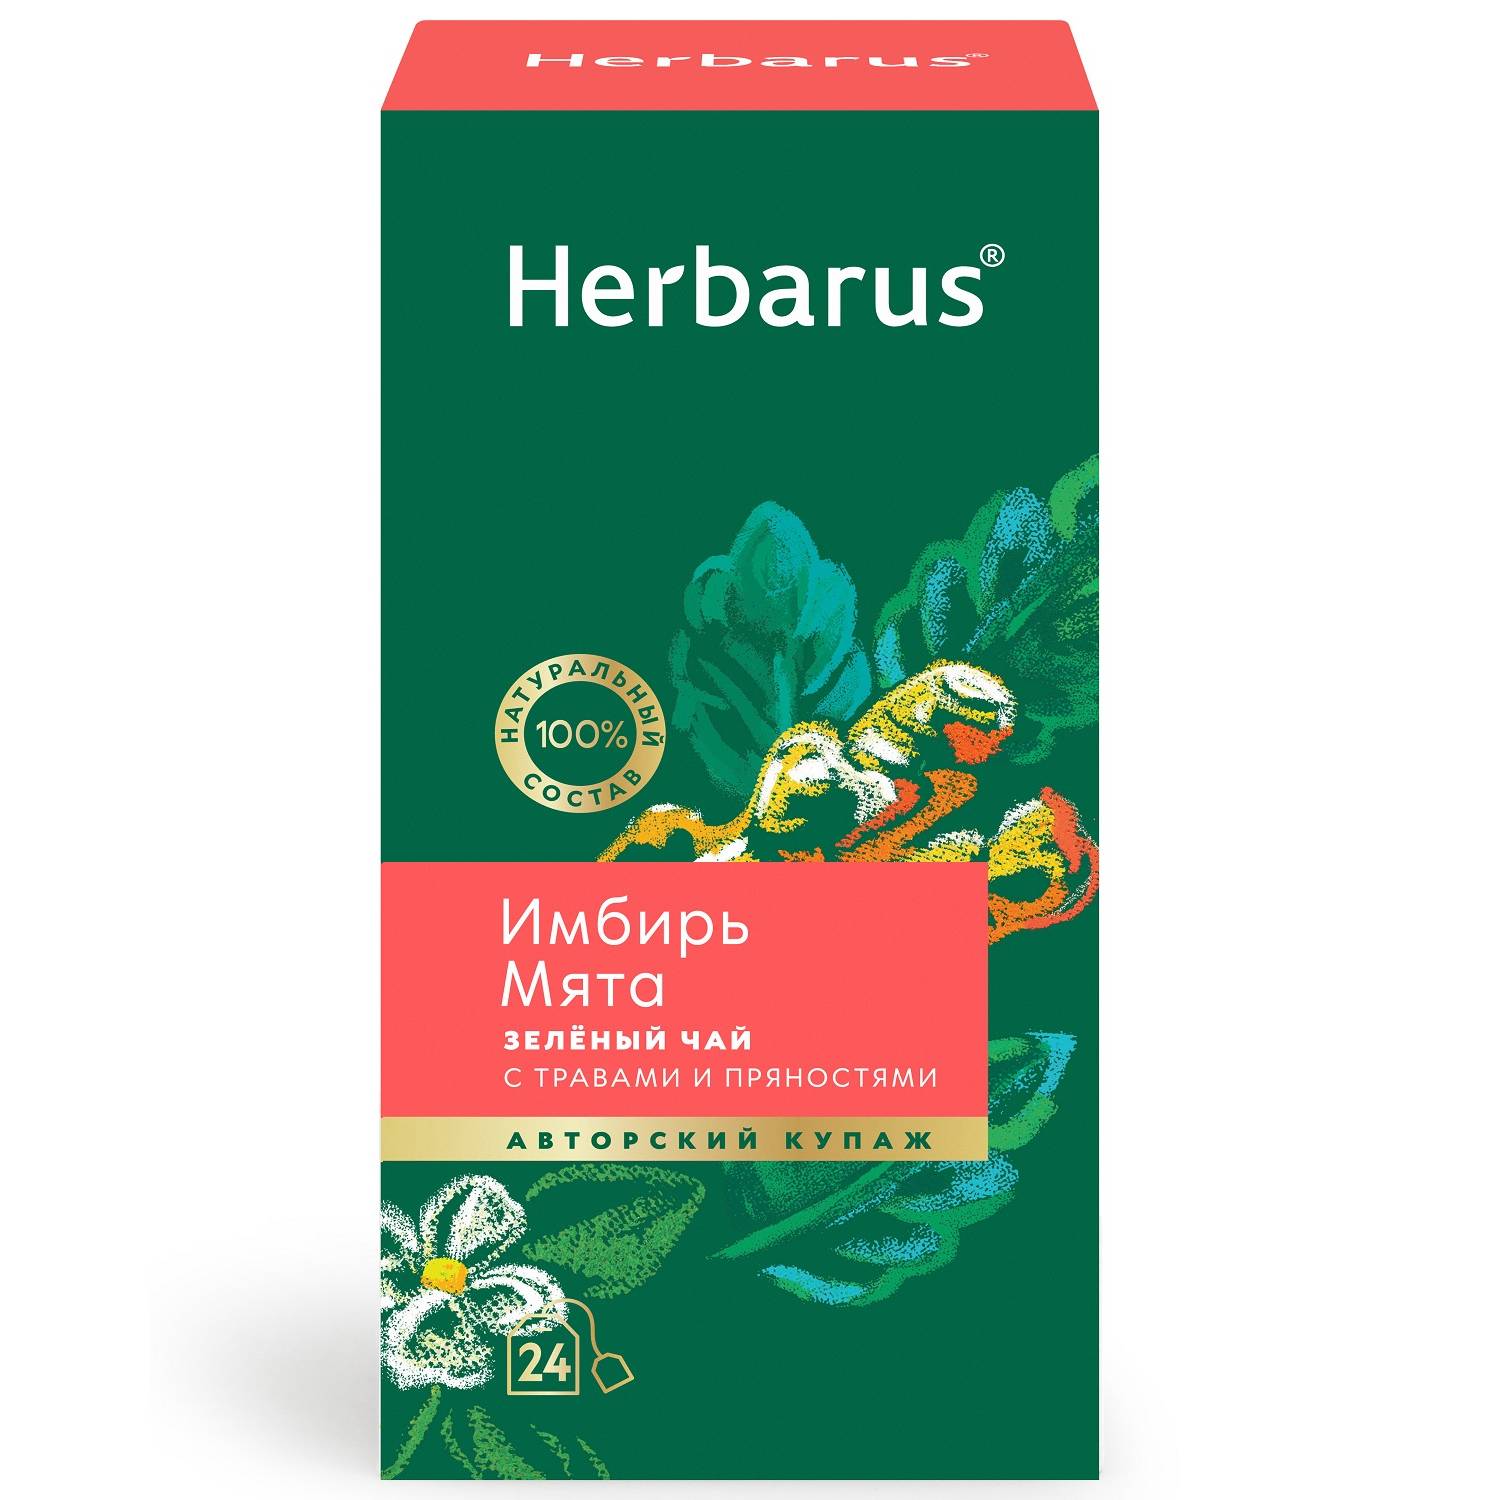 Herbarus Зеленый чай с травами и пряностями Имбирь и мята, 24 пакетика (Herbarus, Чай с добавками) herbarus чай черный с добавками дикий терпкий 24 х 2 г herbarus чай с добавками